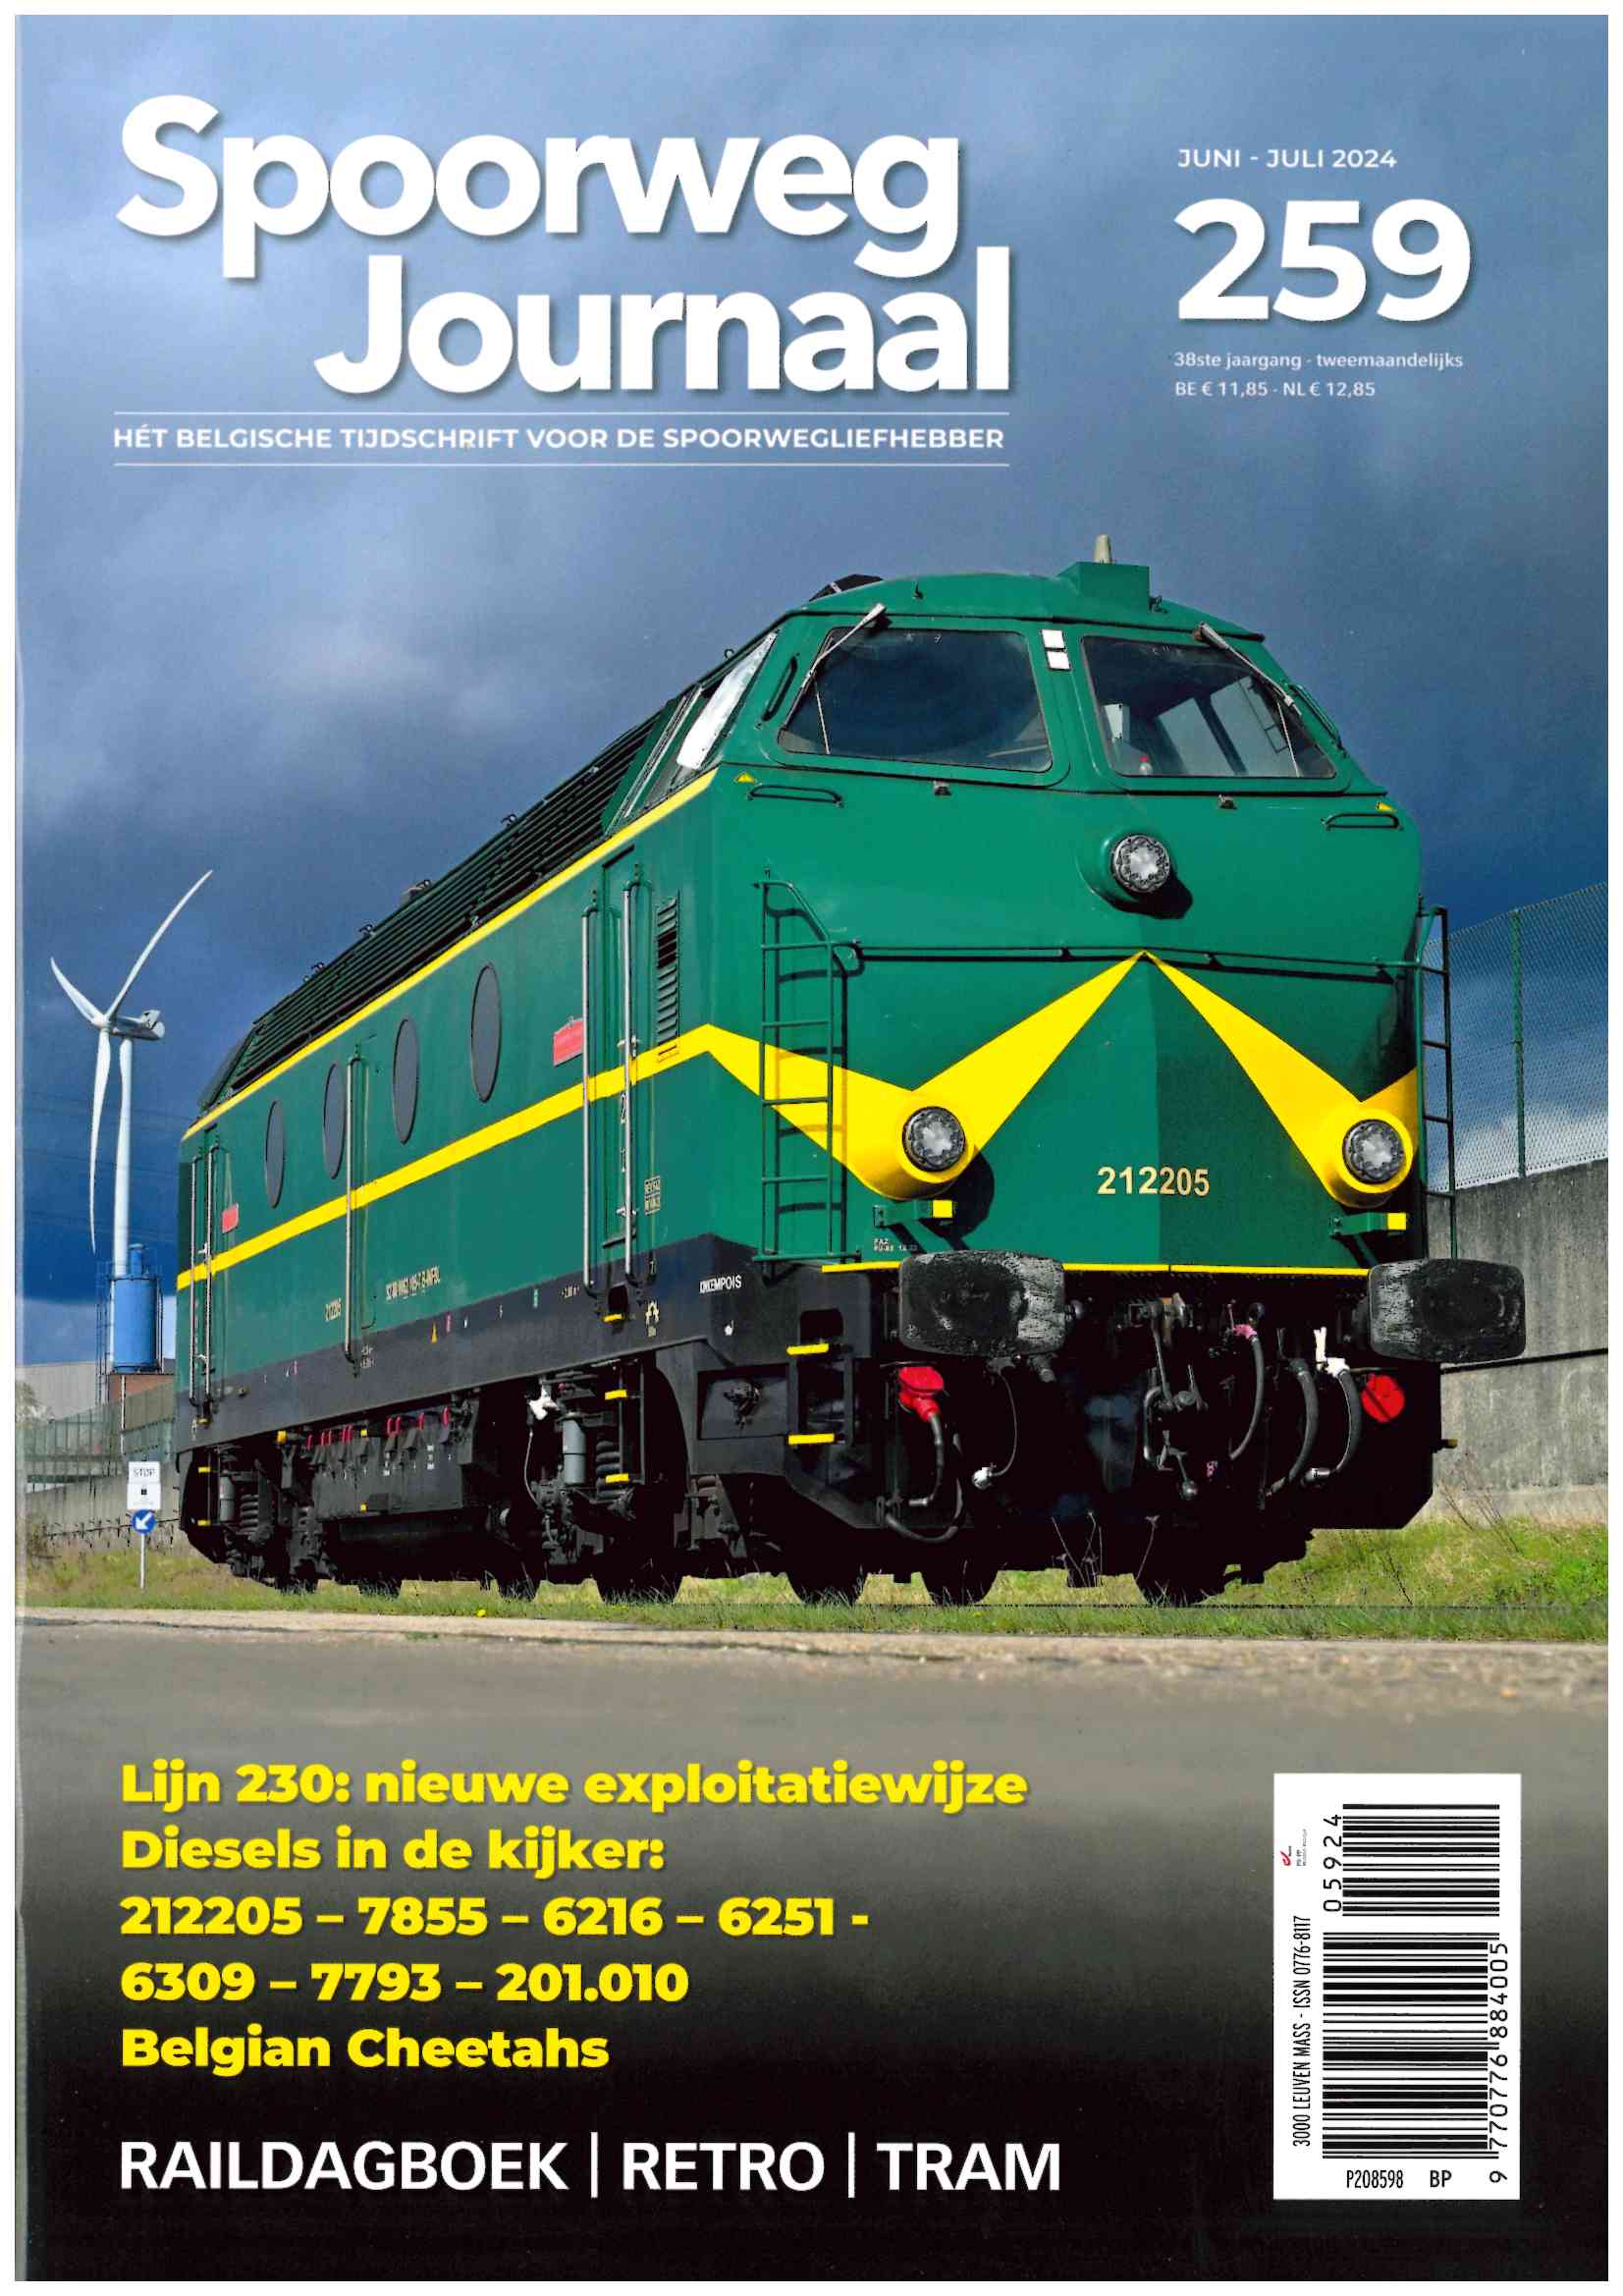 Spoorweg Journal 259 Het Belgisch Tijdschrift voor de spoorwegliefhebber - niederländische/flämische Ausgabe